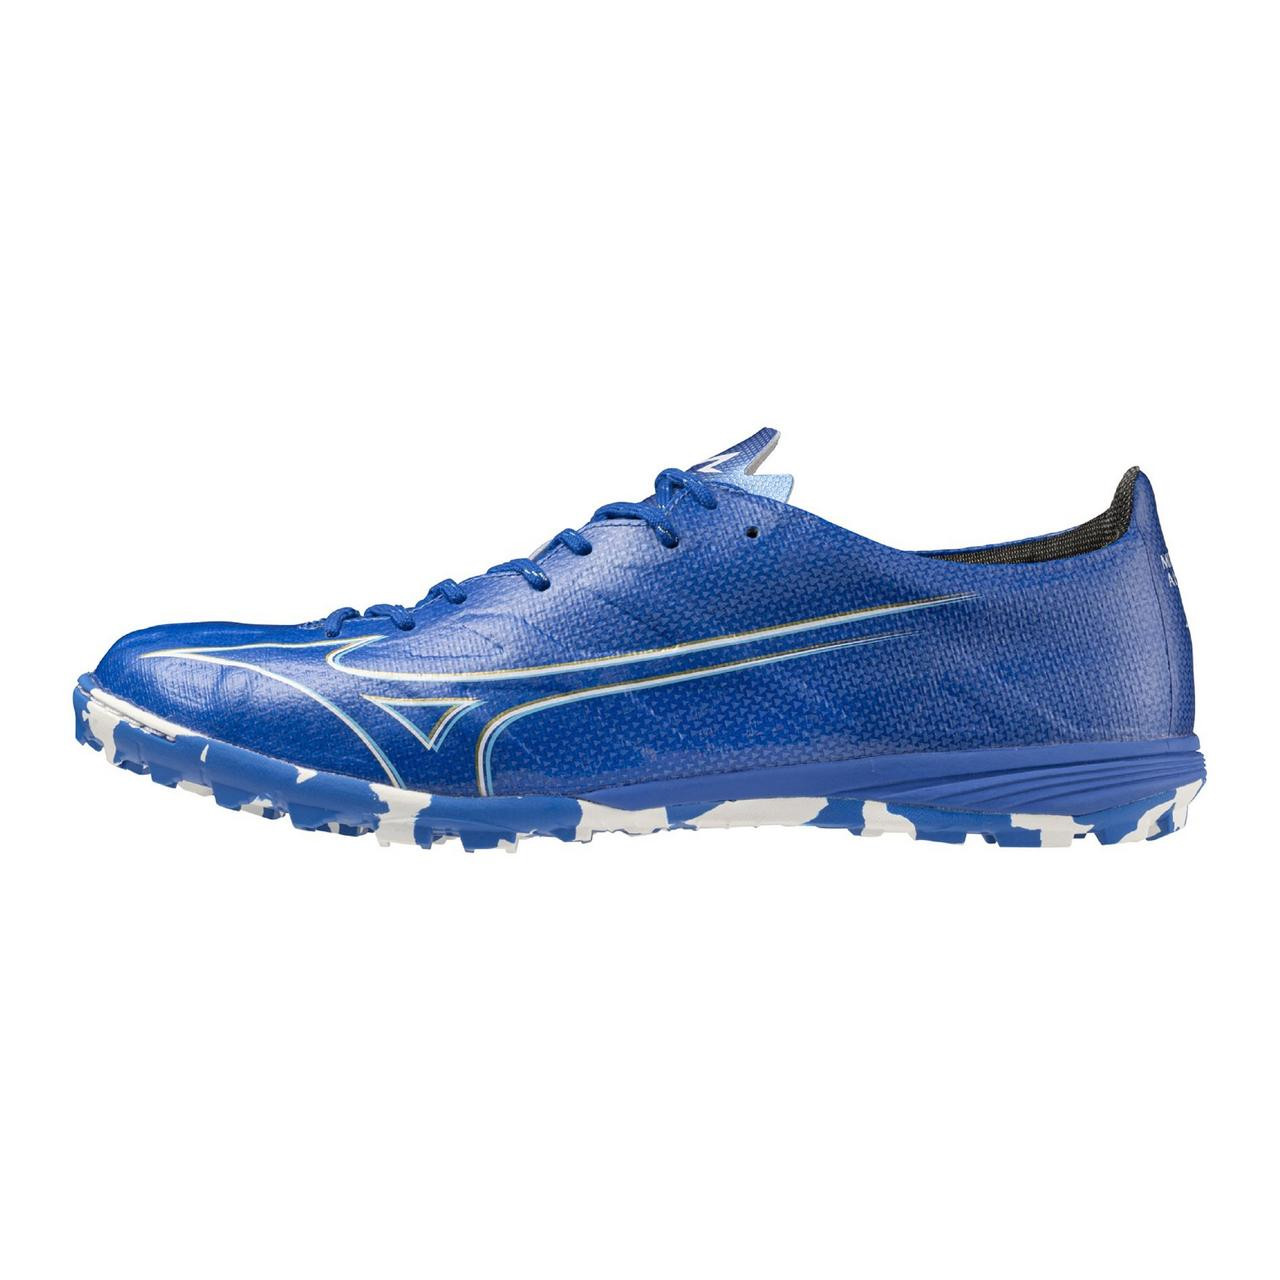 Mizuno Alpha Pro AS Soccer Shoe